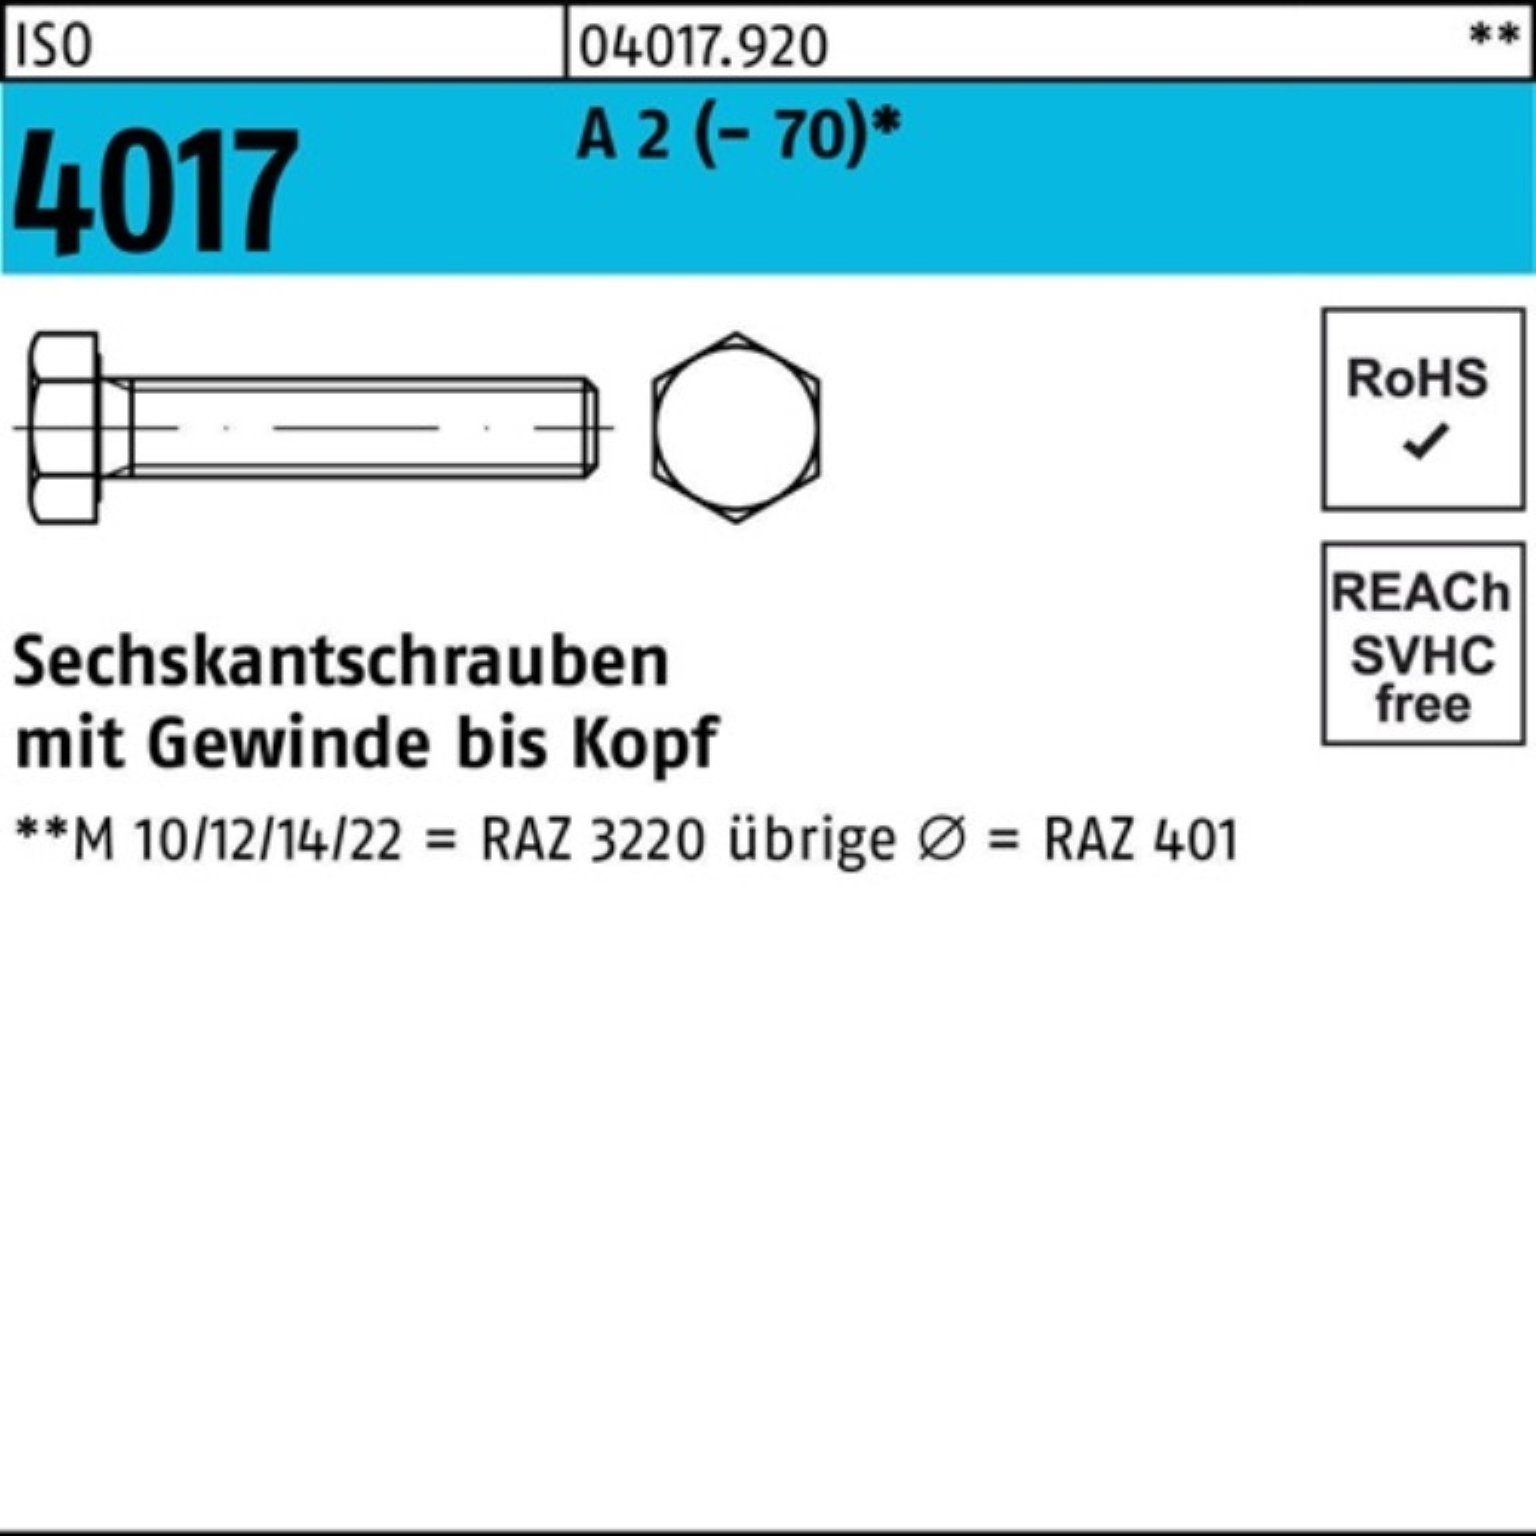 Bufab Sechskantschraube 100er Pack Sechskantschraube ISO 4017 VG M22x 140 A 2 (70) 1 Stück